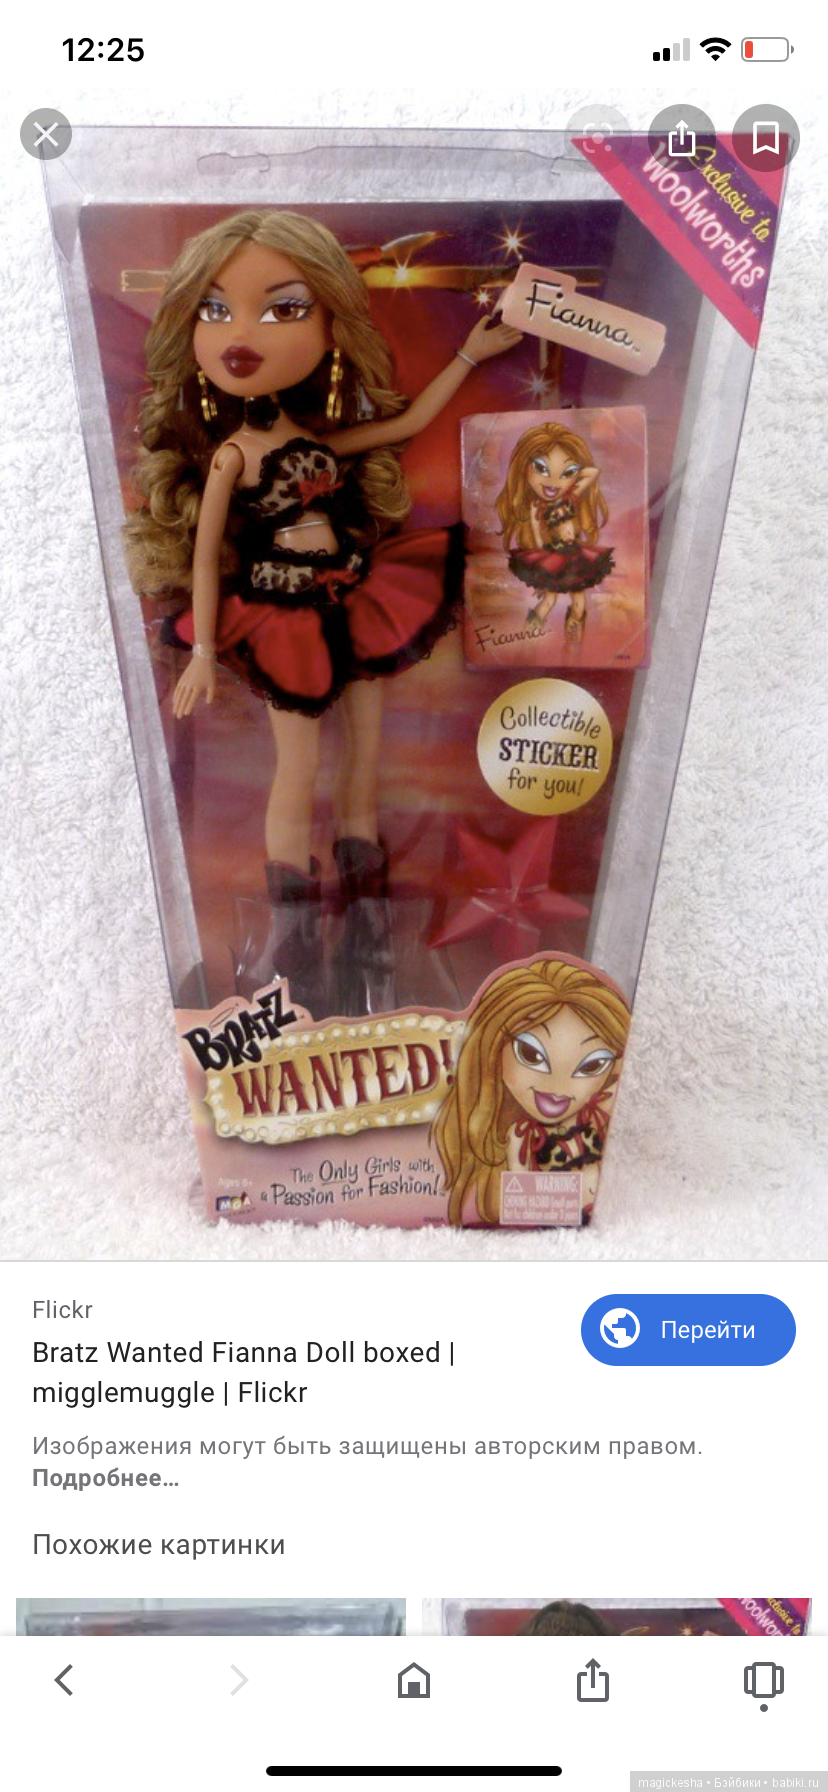 Bratz Wanted Fianna Doll boxed, migglemuggle